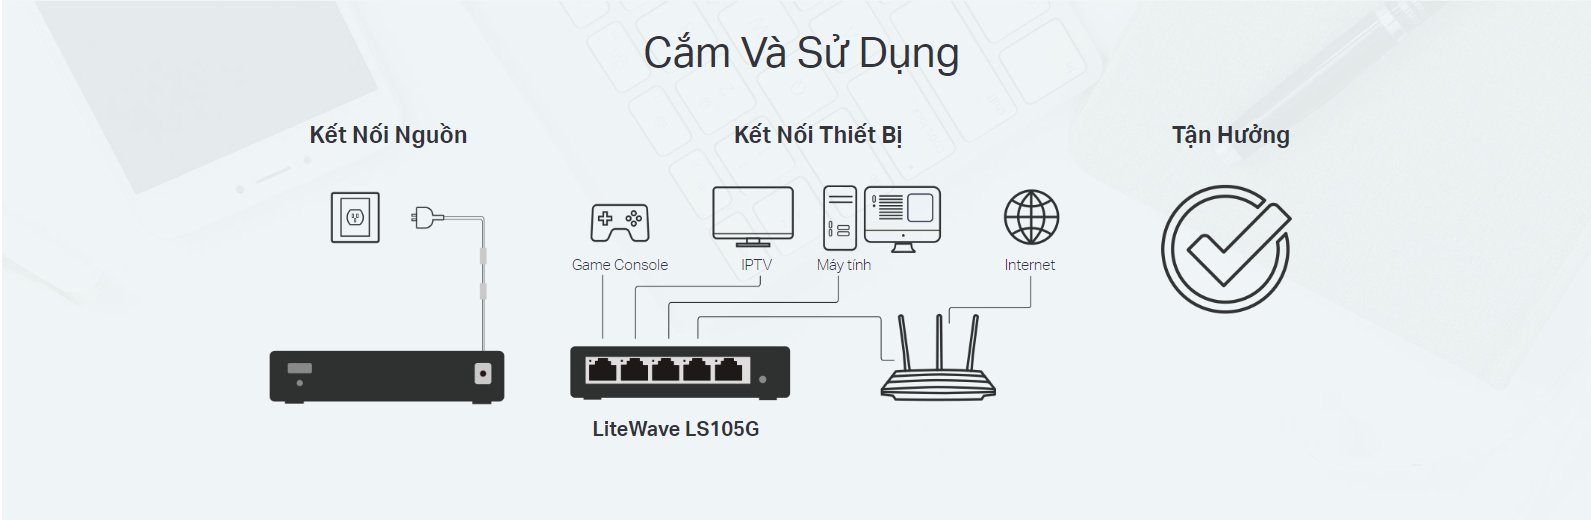 Switch TP-Link LS105G dễ dàng kết nối và sử dụng với các thiết bị khác